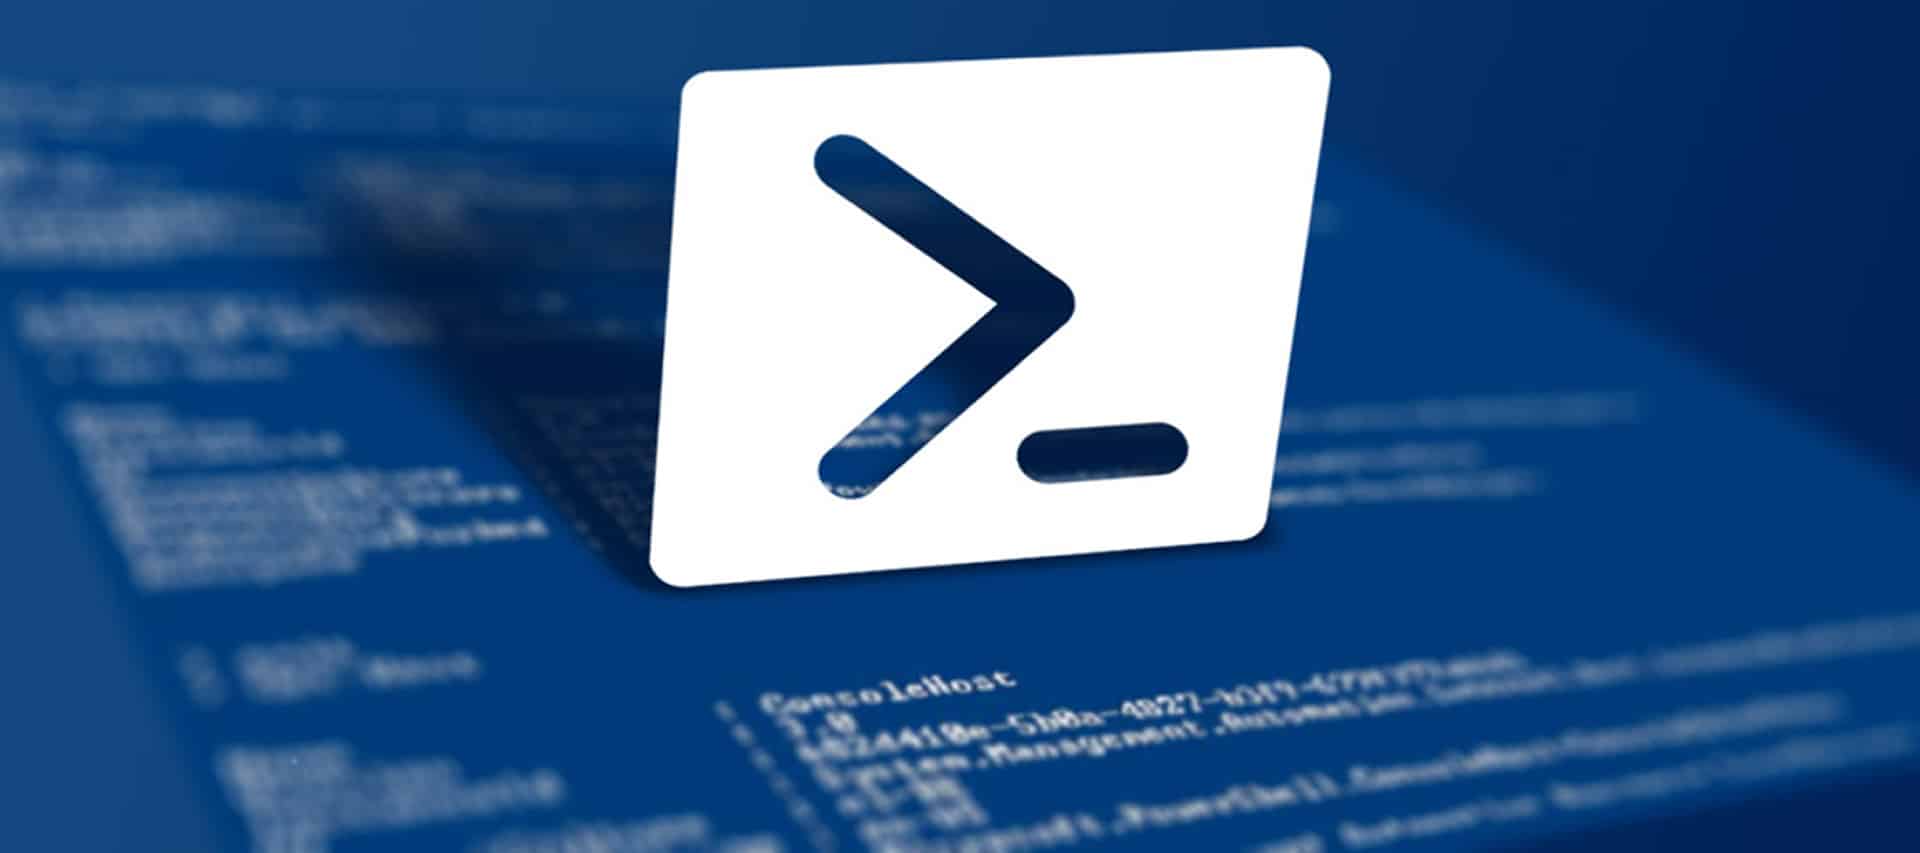 Microsoft alerta administradores de sistema para atualizar o PowerShell 7 para corrigir a falha que expõe credenciais no Linux